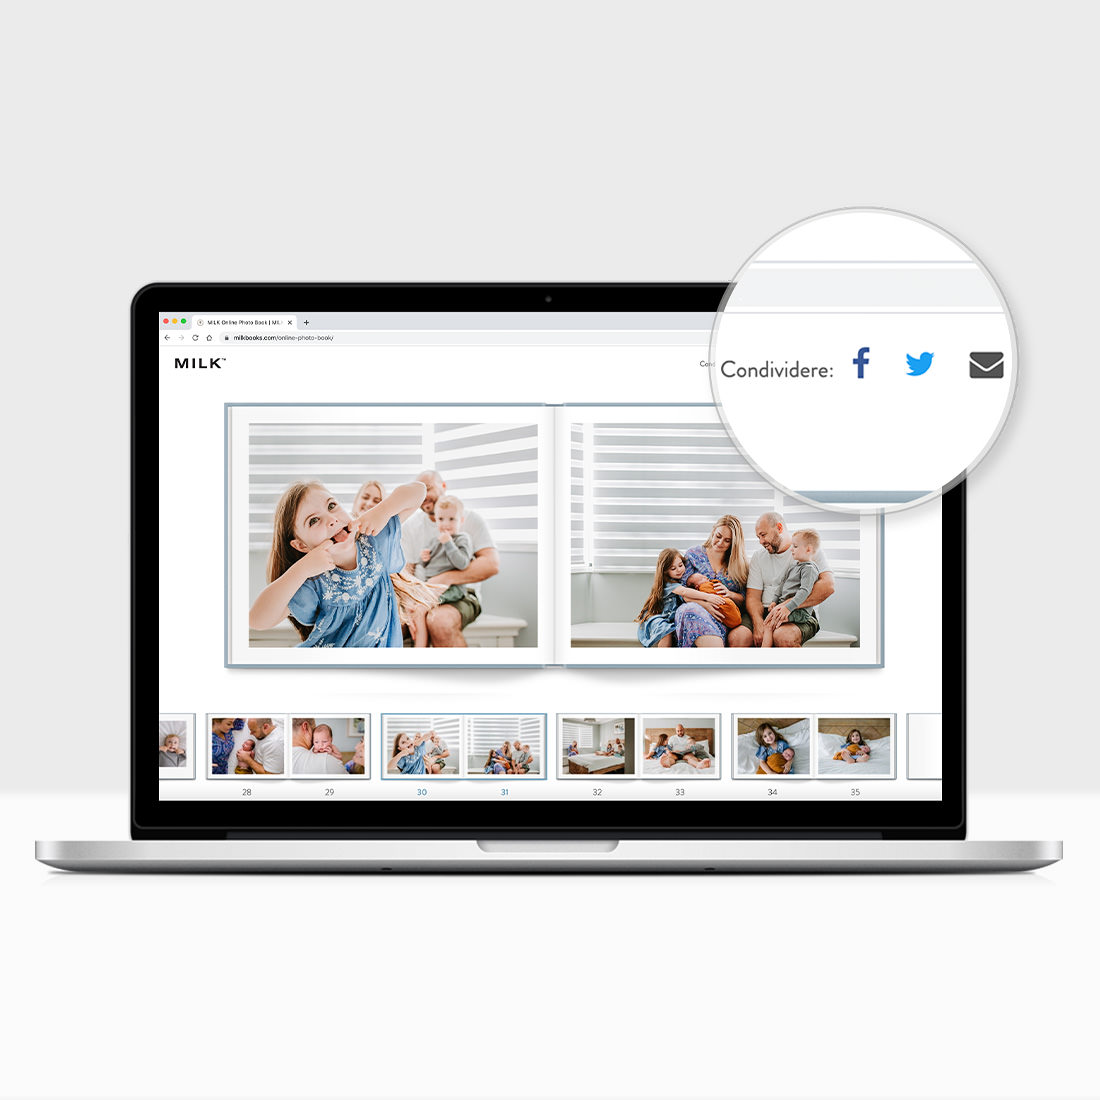 Lo studio di design di fotolibri e album fotografici MILK mostra come condividere flipbook online gratuiti tramite Facebook, Twitter ed e-mail.